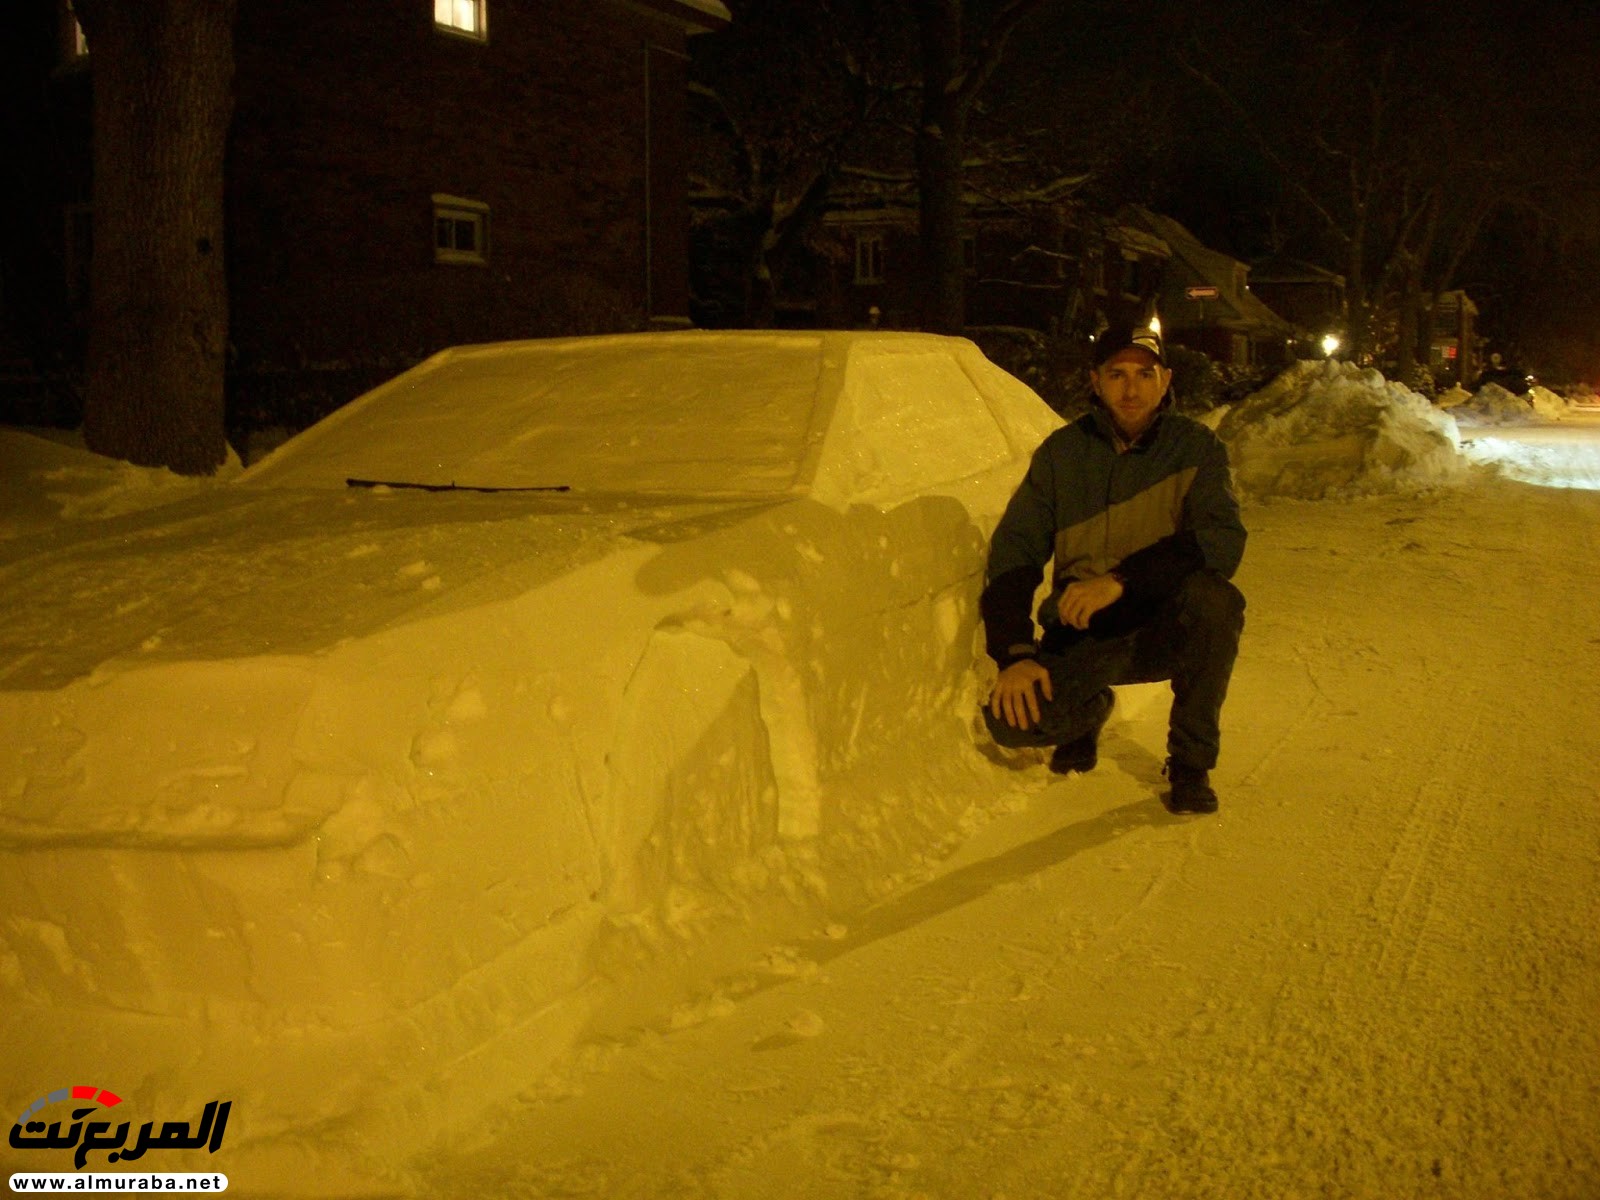 Помощь снежку. Машина из снега. Прикол для авто из снега. Микро грузовик со снегом.